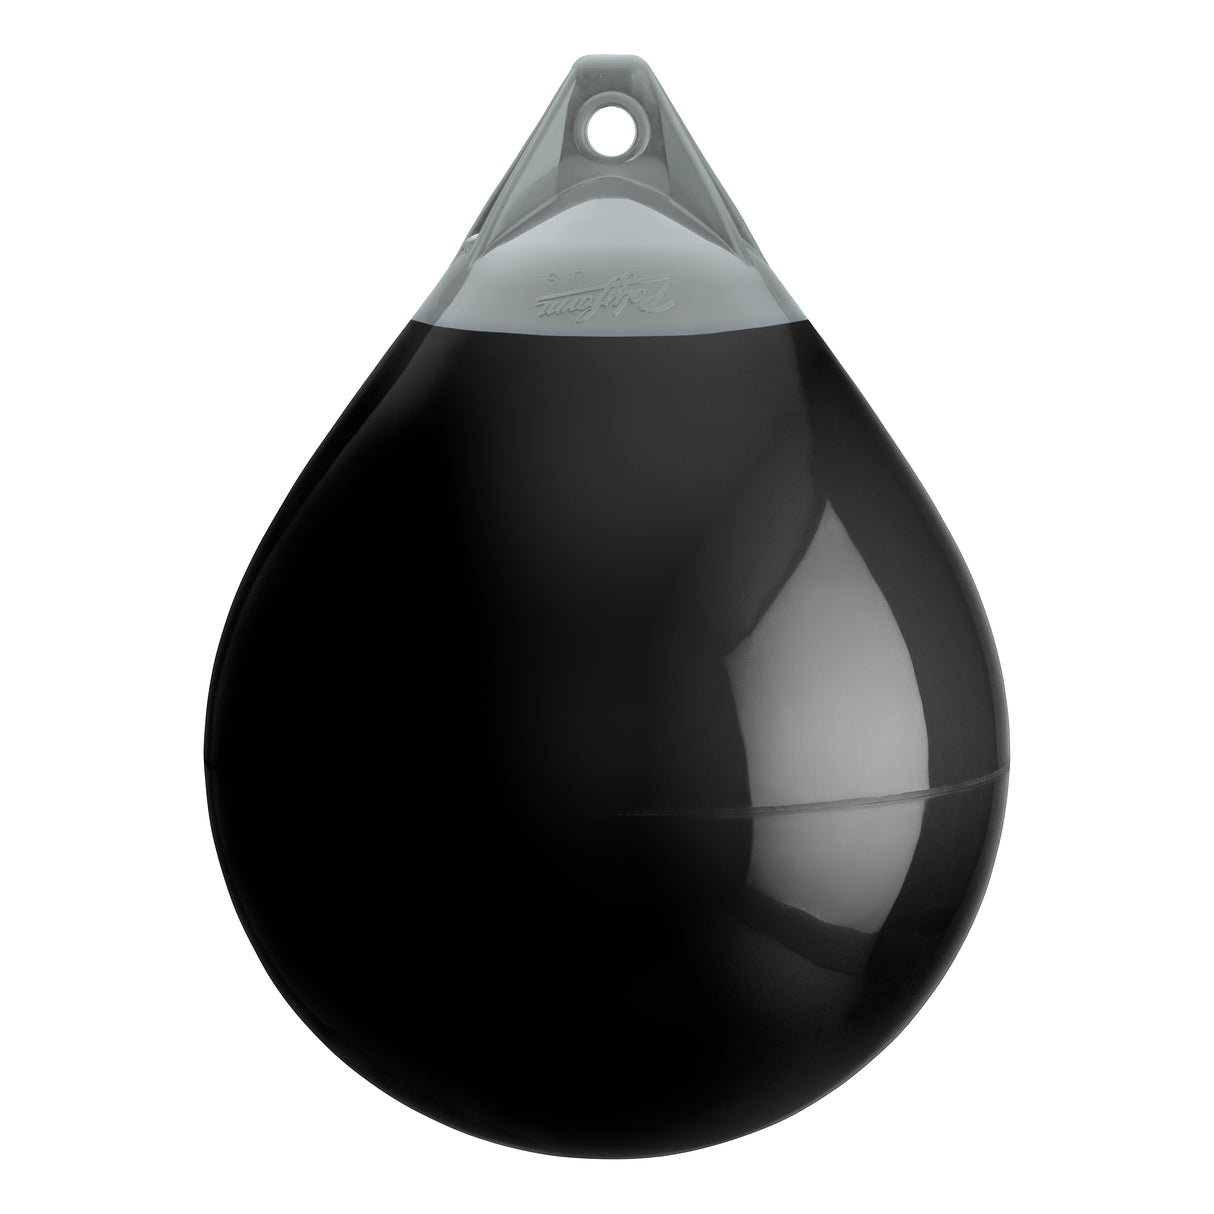 Black buoy with Grey-Top, Polyform A-4